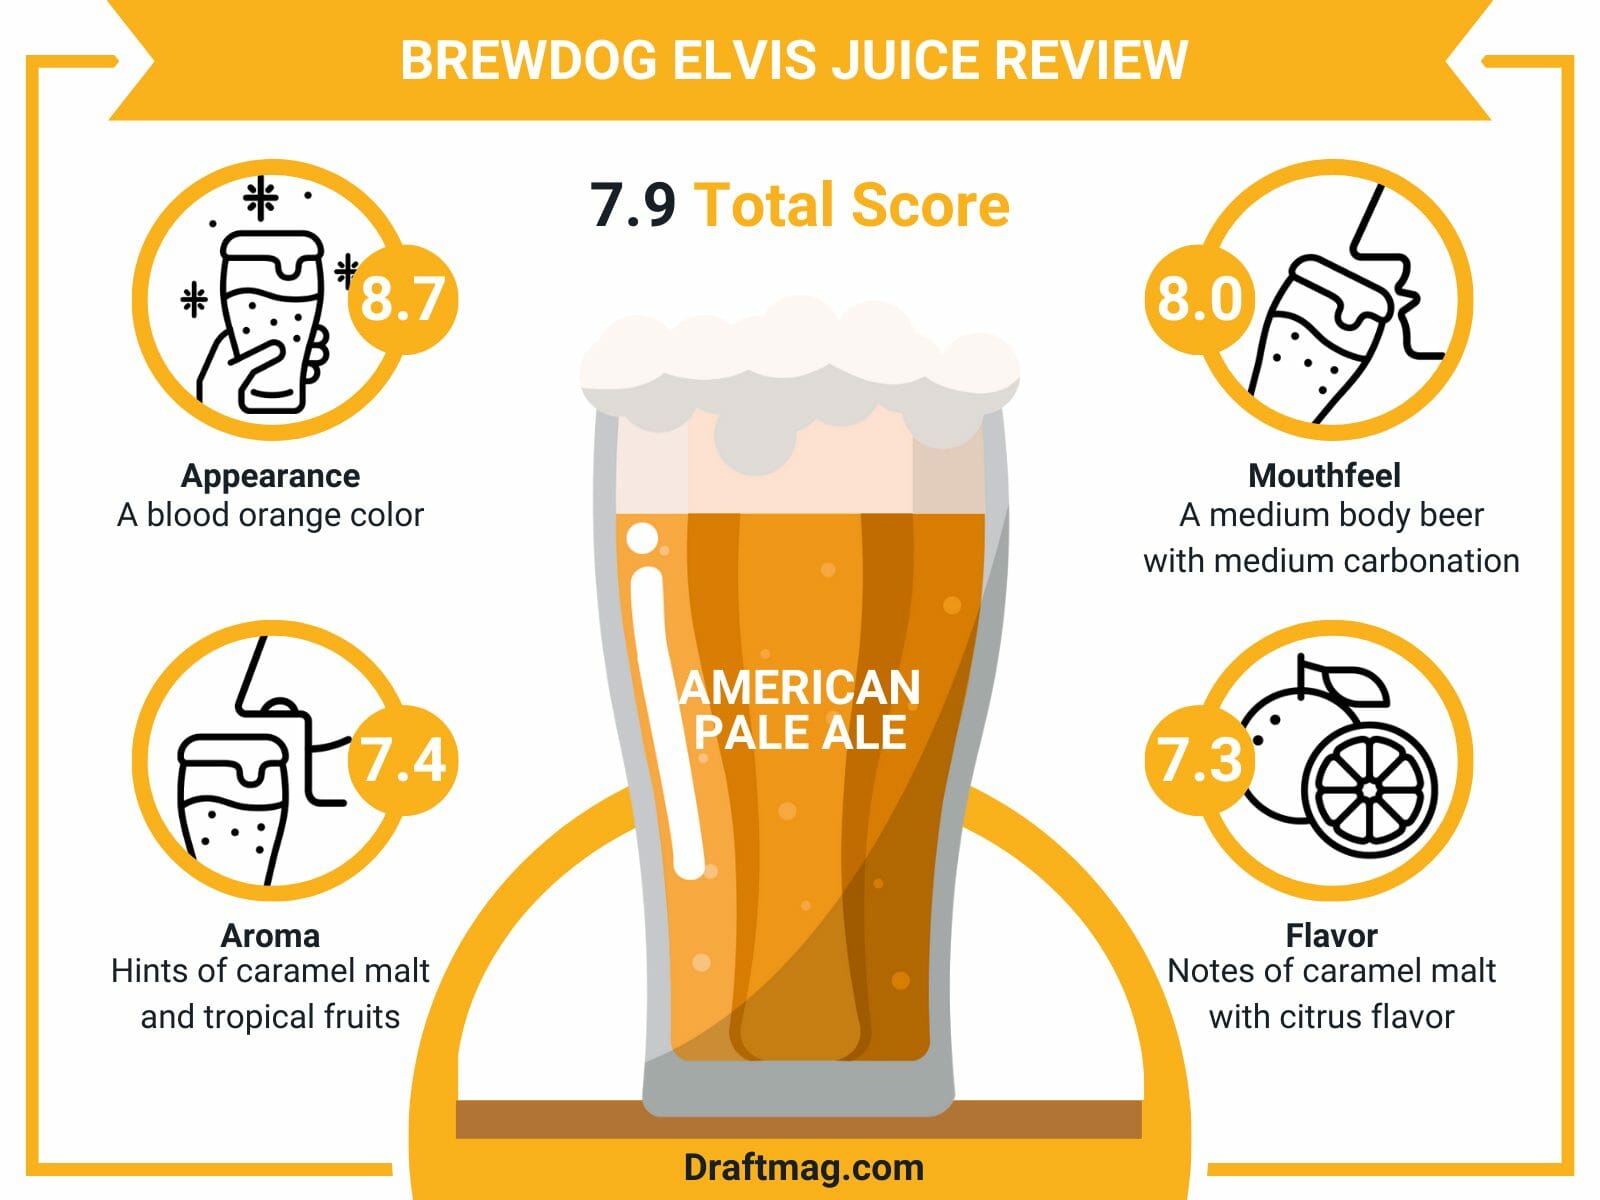 Brewdog Elvis Juice Review Infographic